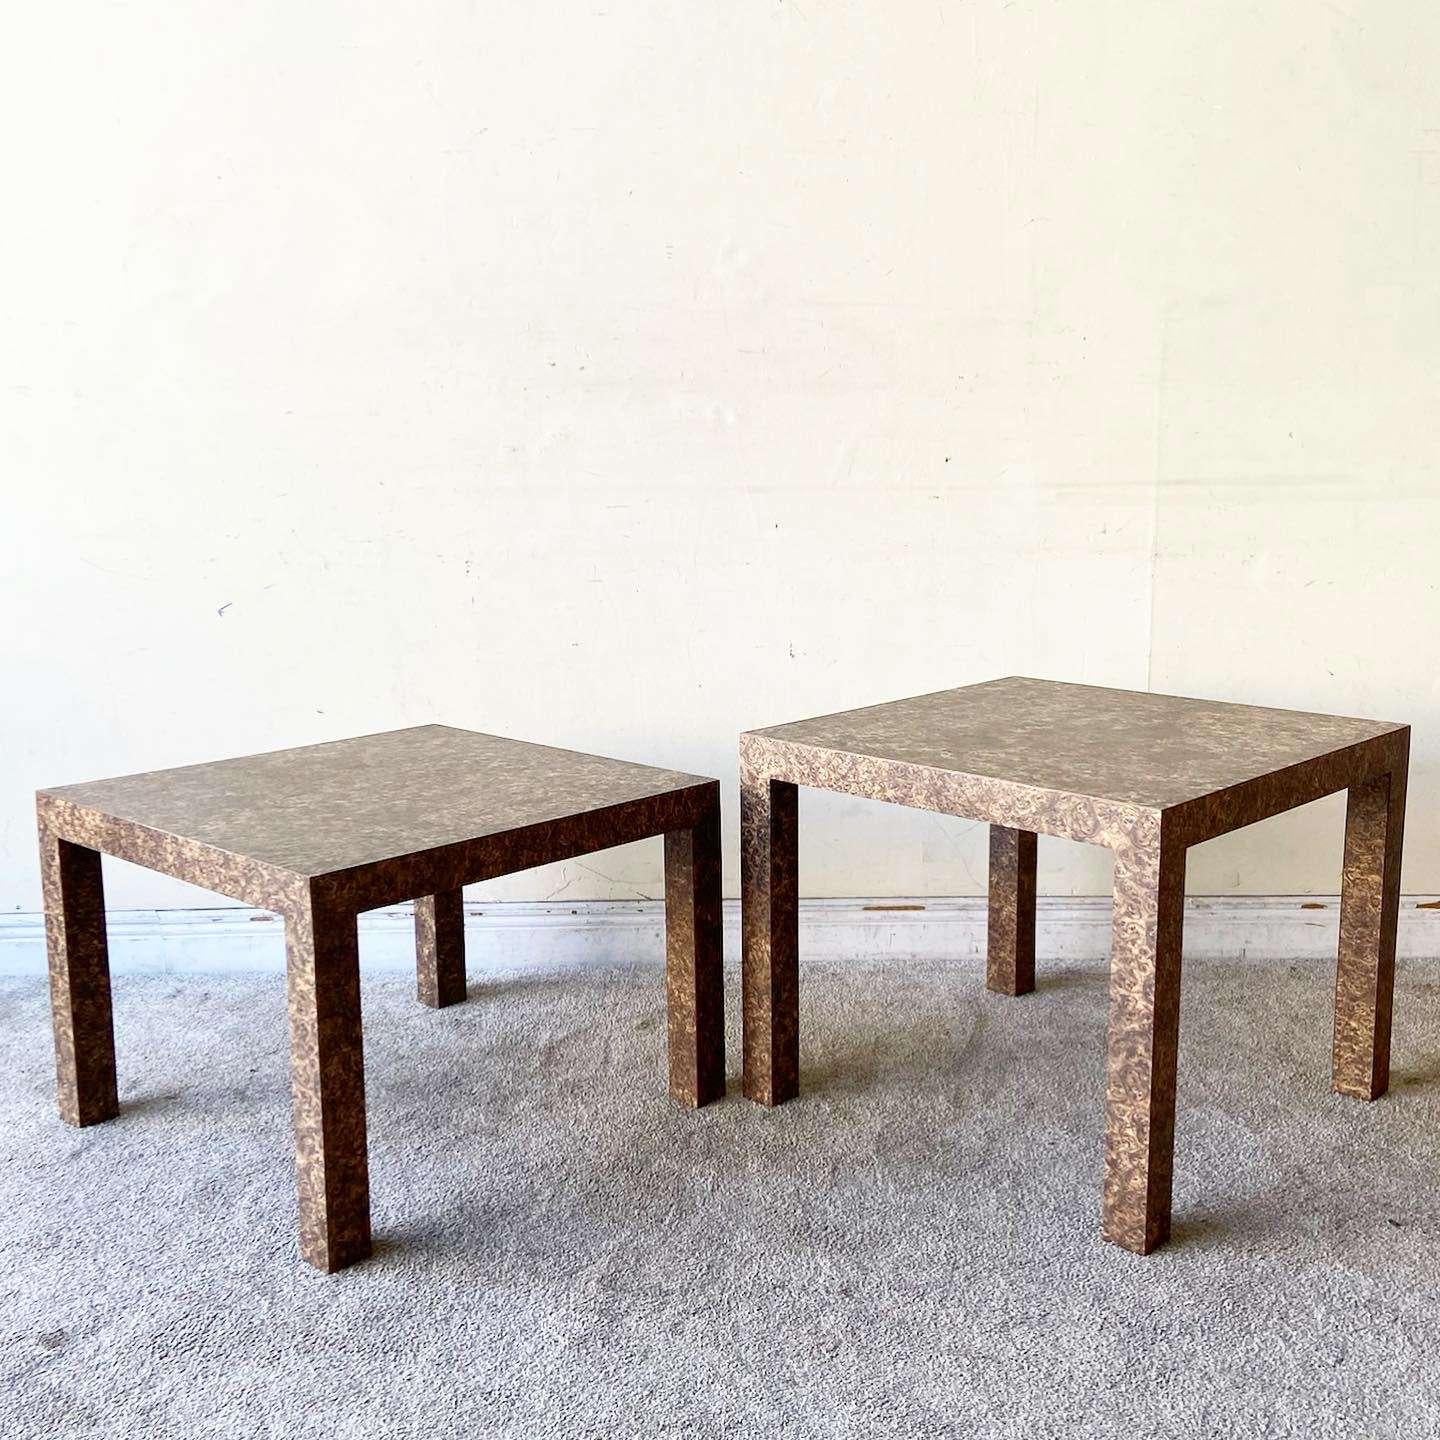 Exceptionnelles tables d'appoint postmodernes ascendantes Parsons vintage. Chacun d'entre eux présente un stratifié en bois de bouleau plus foncé.

La table la plus courte mesure 19,5 